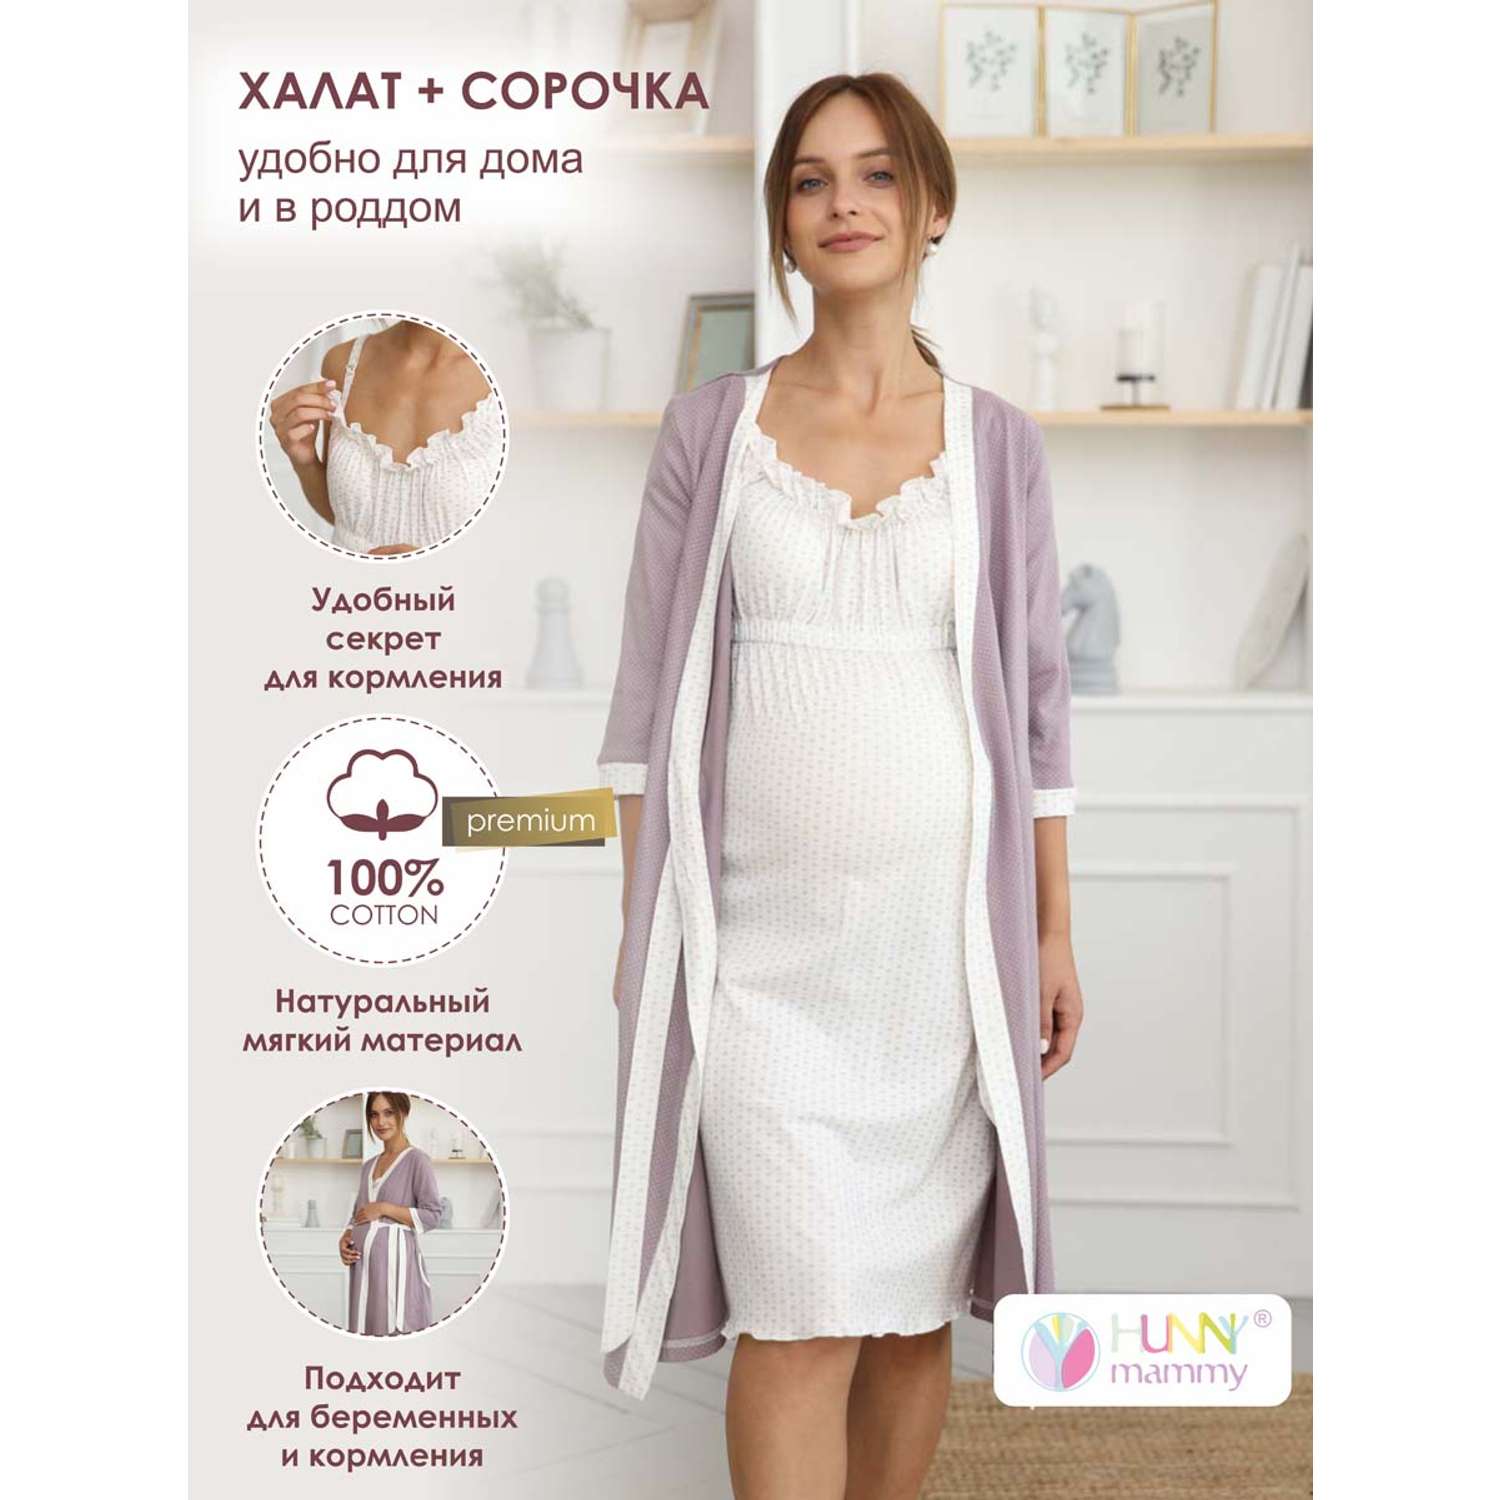 Комплект для беременных Hunny Mammy 1-НМК 10520 Бежевый/молочный - фото 2